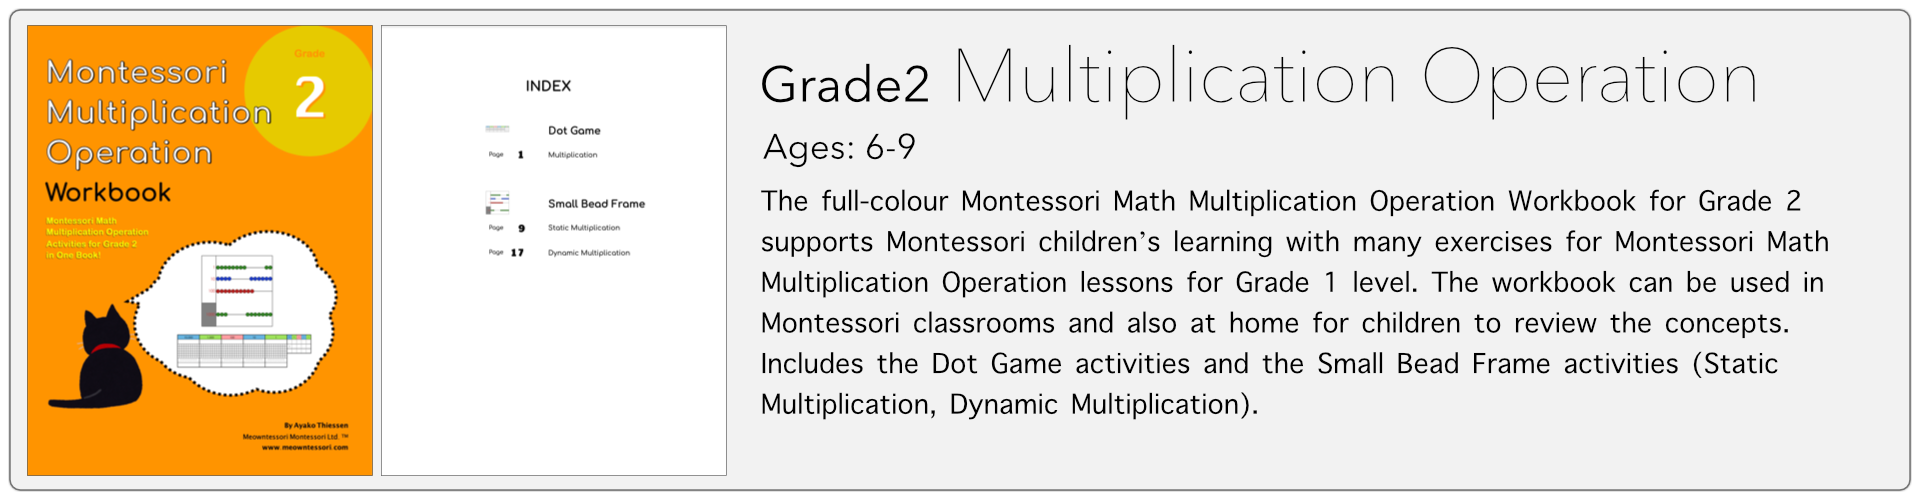 grade2 multiplication operation